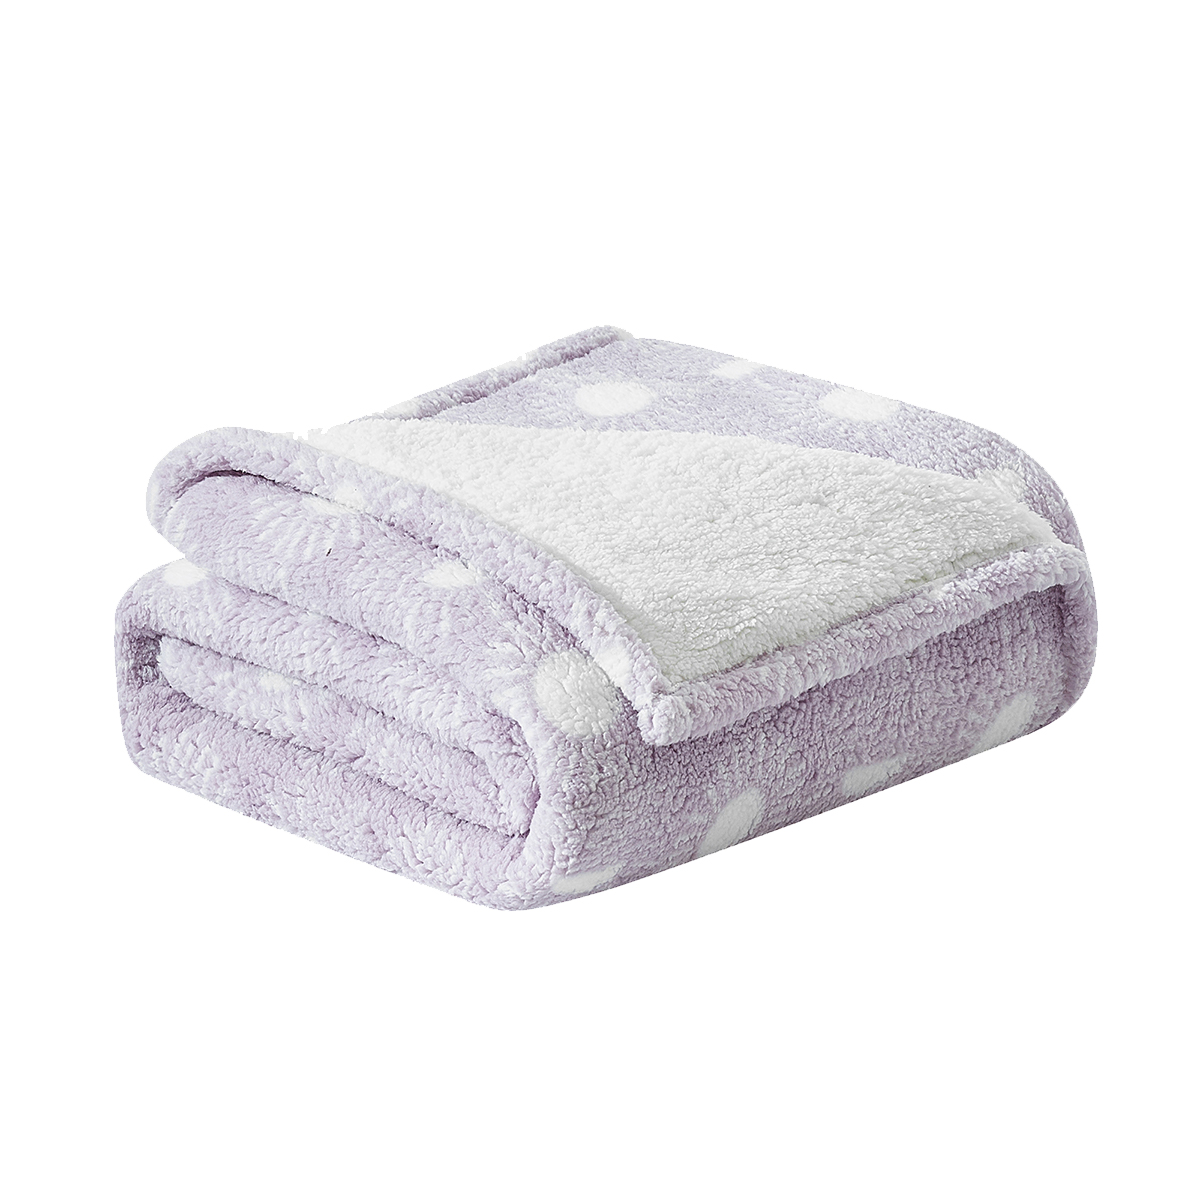 Pink Sherpa Fleece Throw Blanket for Cozy Comfort